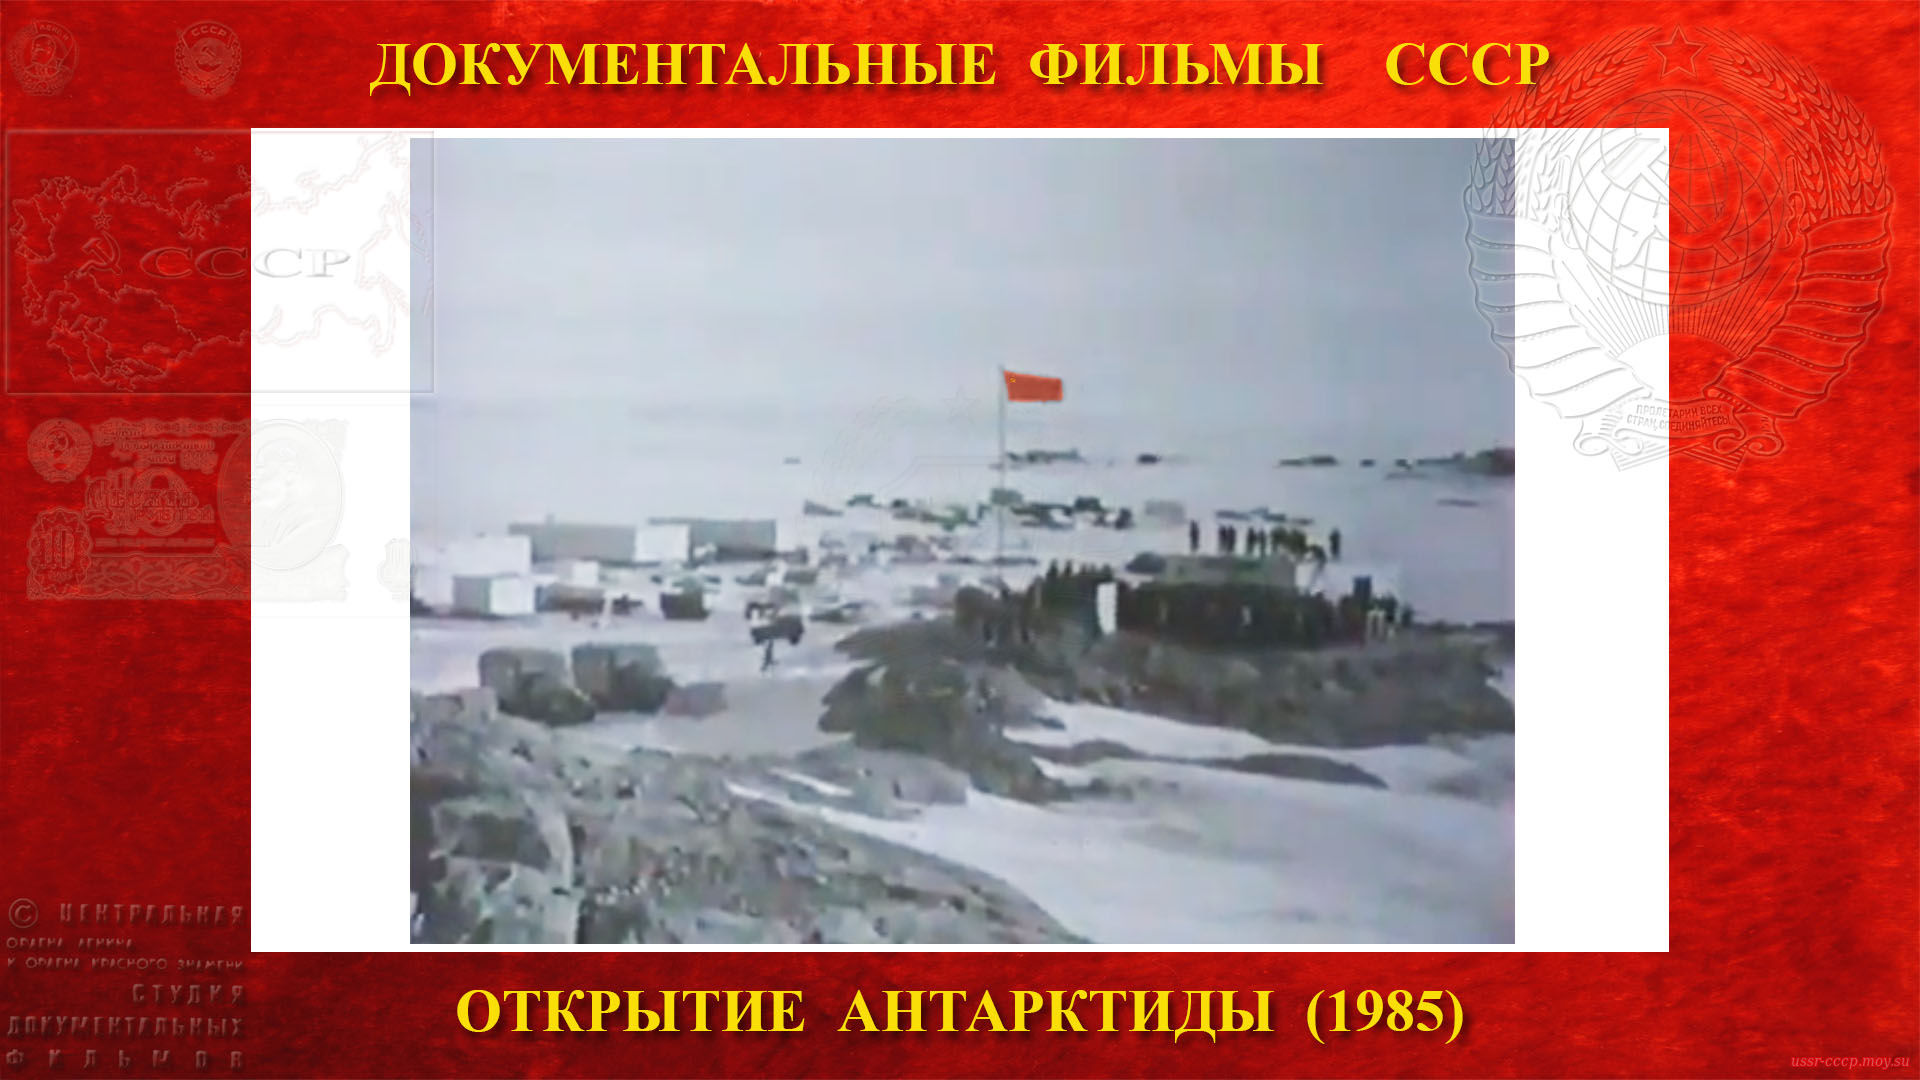 Открытие Антарктиды — Государственный флаг Союза Советских Социалистических Республик в Мирном поднят.